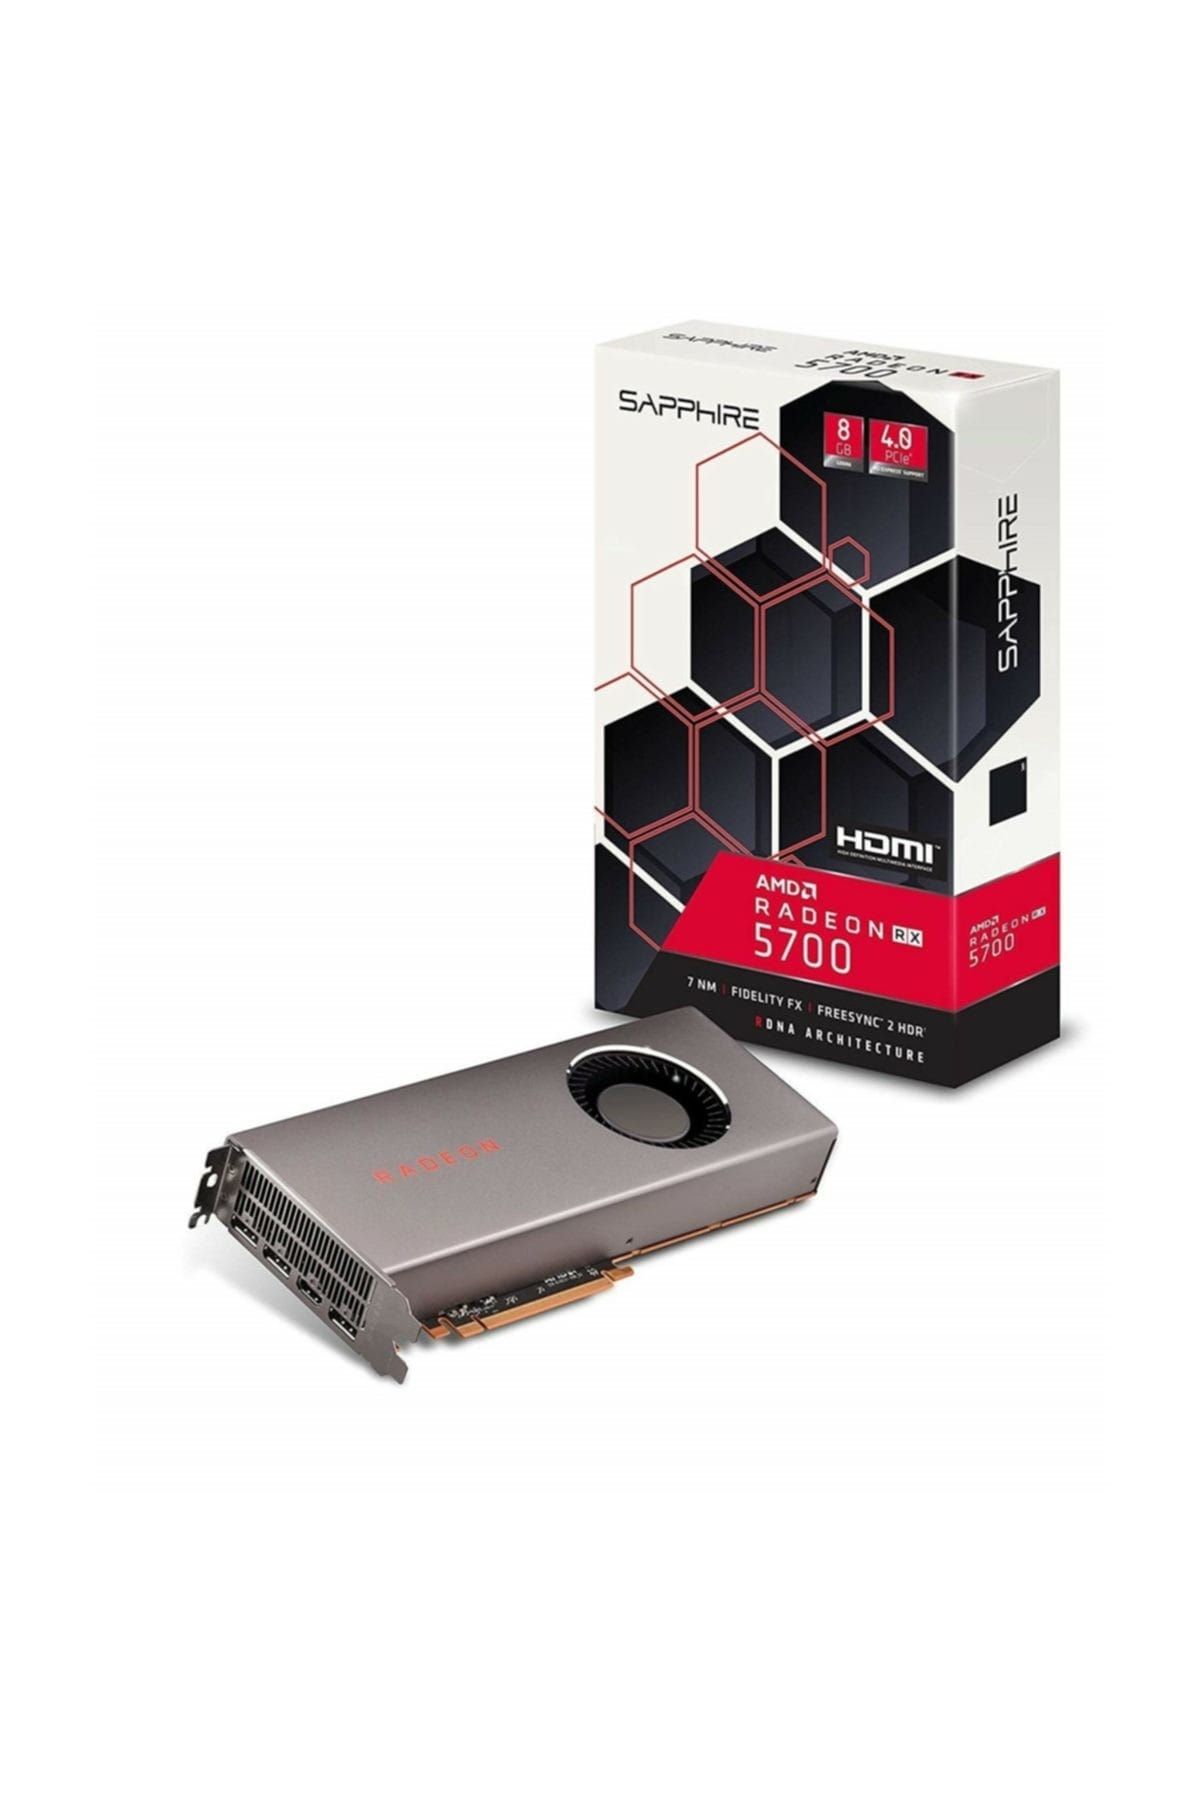 SAPPHIRE Radeon RX 5700 8GB GDDR6 256Bit DX12 AMD Radeon Ekran Kartı 21294-01-20G